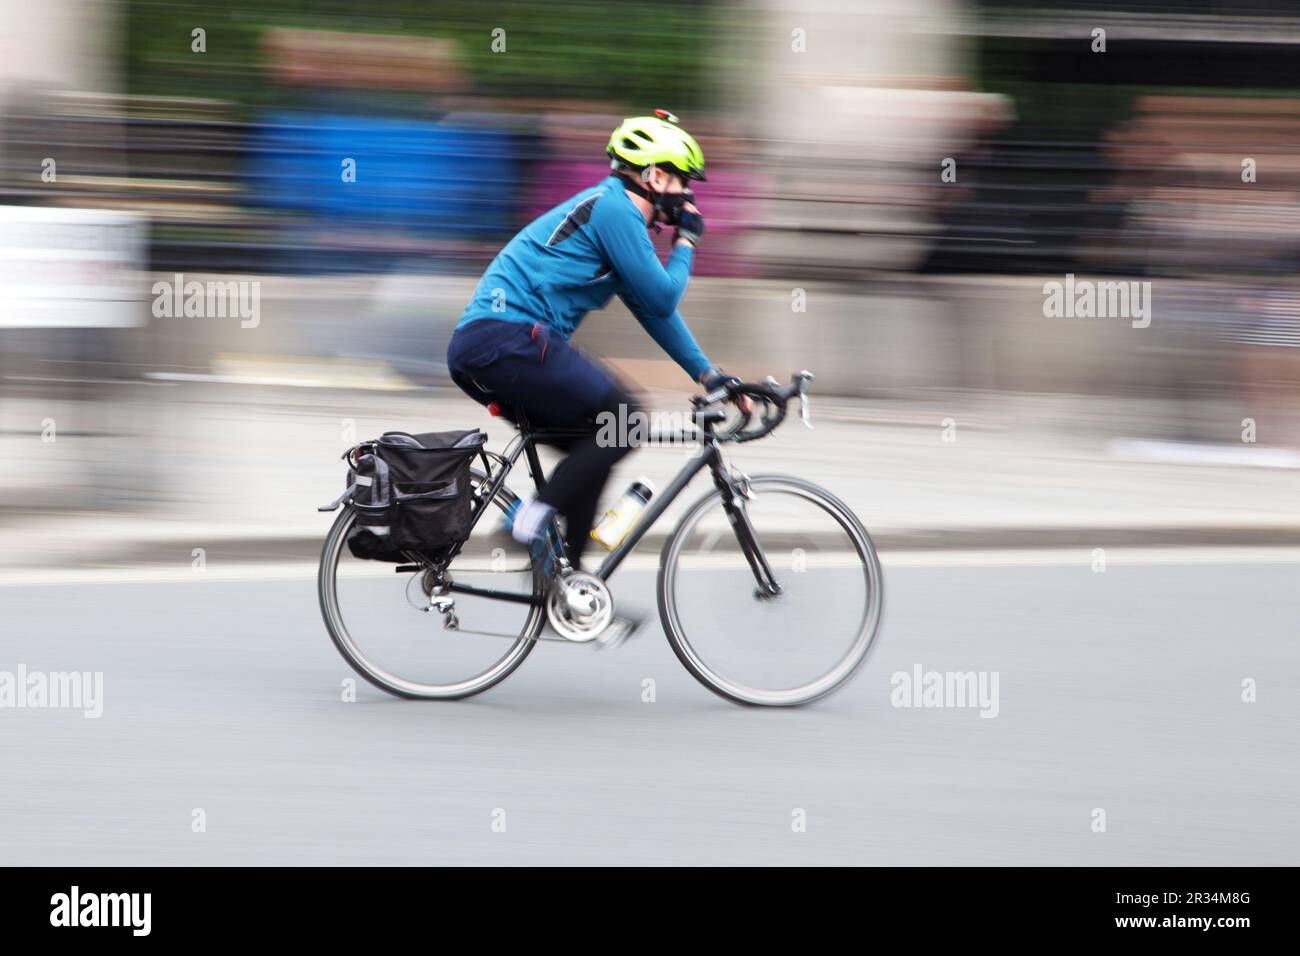 Cycliste dans la circulation urbaine en mouvement flou Banque D'Images